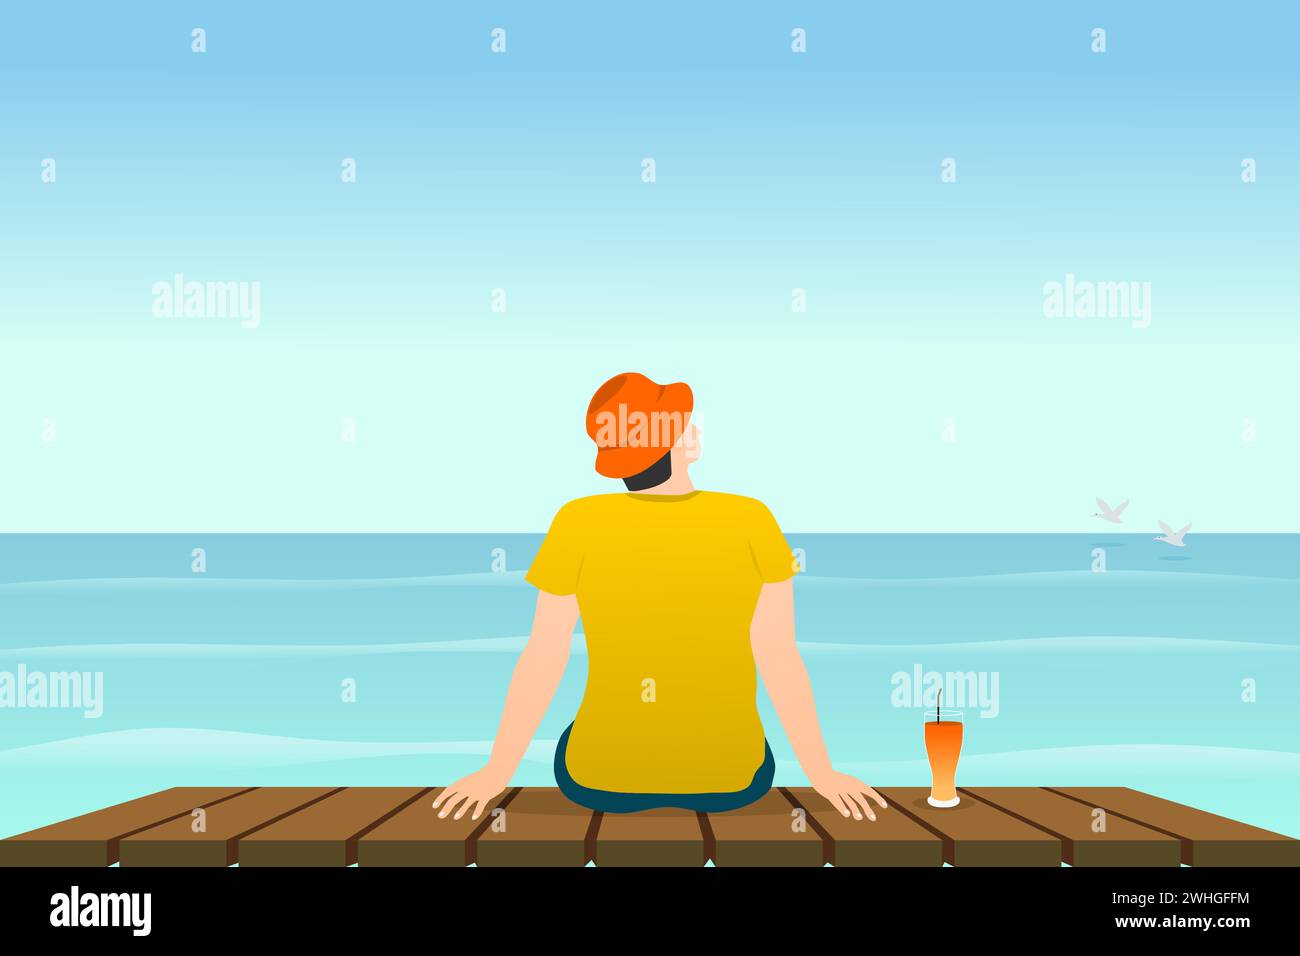 Vue arrière d'un homme assis sur une terrasse en bois avec vue sur l'océan. Illustration vectorielle. Illustration de Vecteur